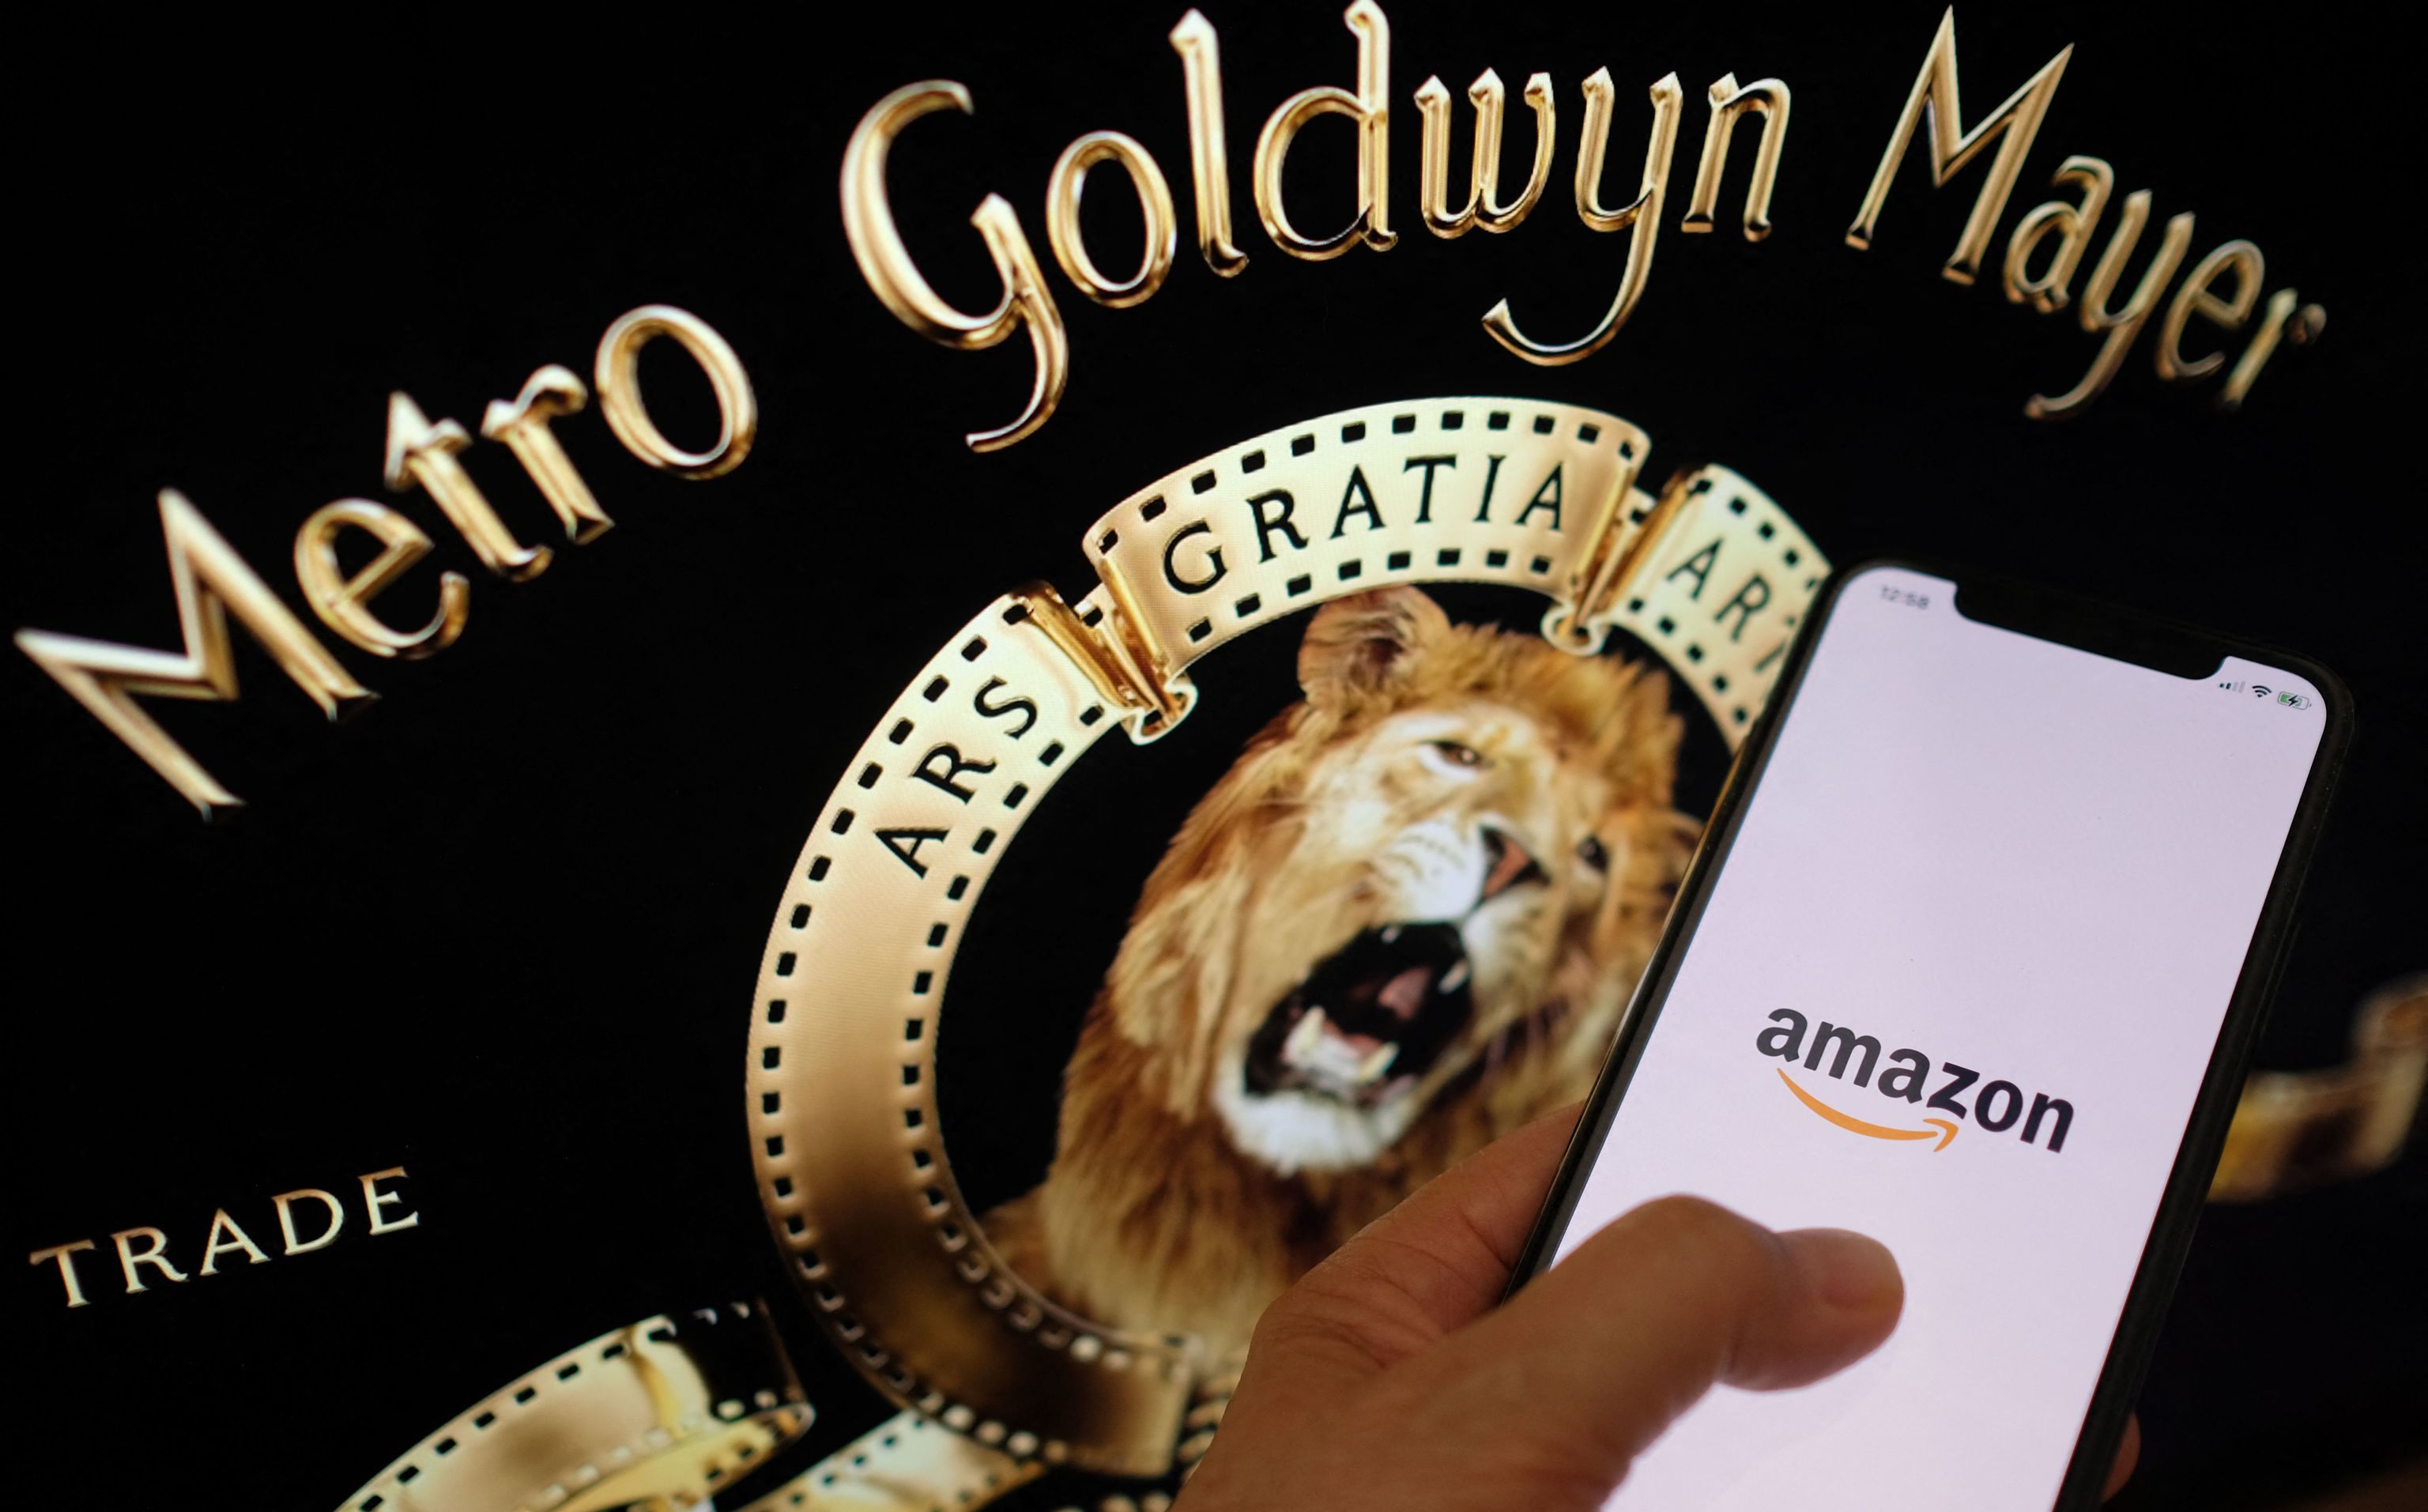 El logo de Amazon en un smartphone junto al de la GMG.